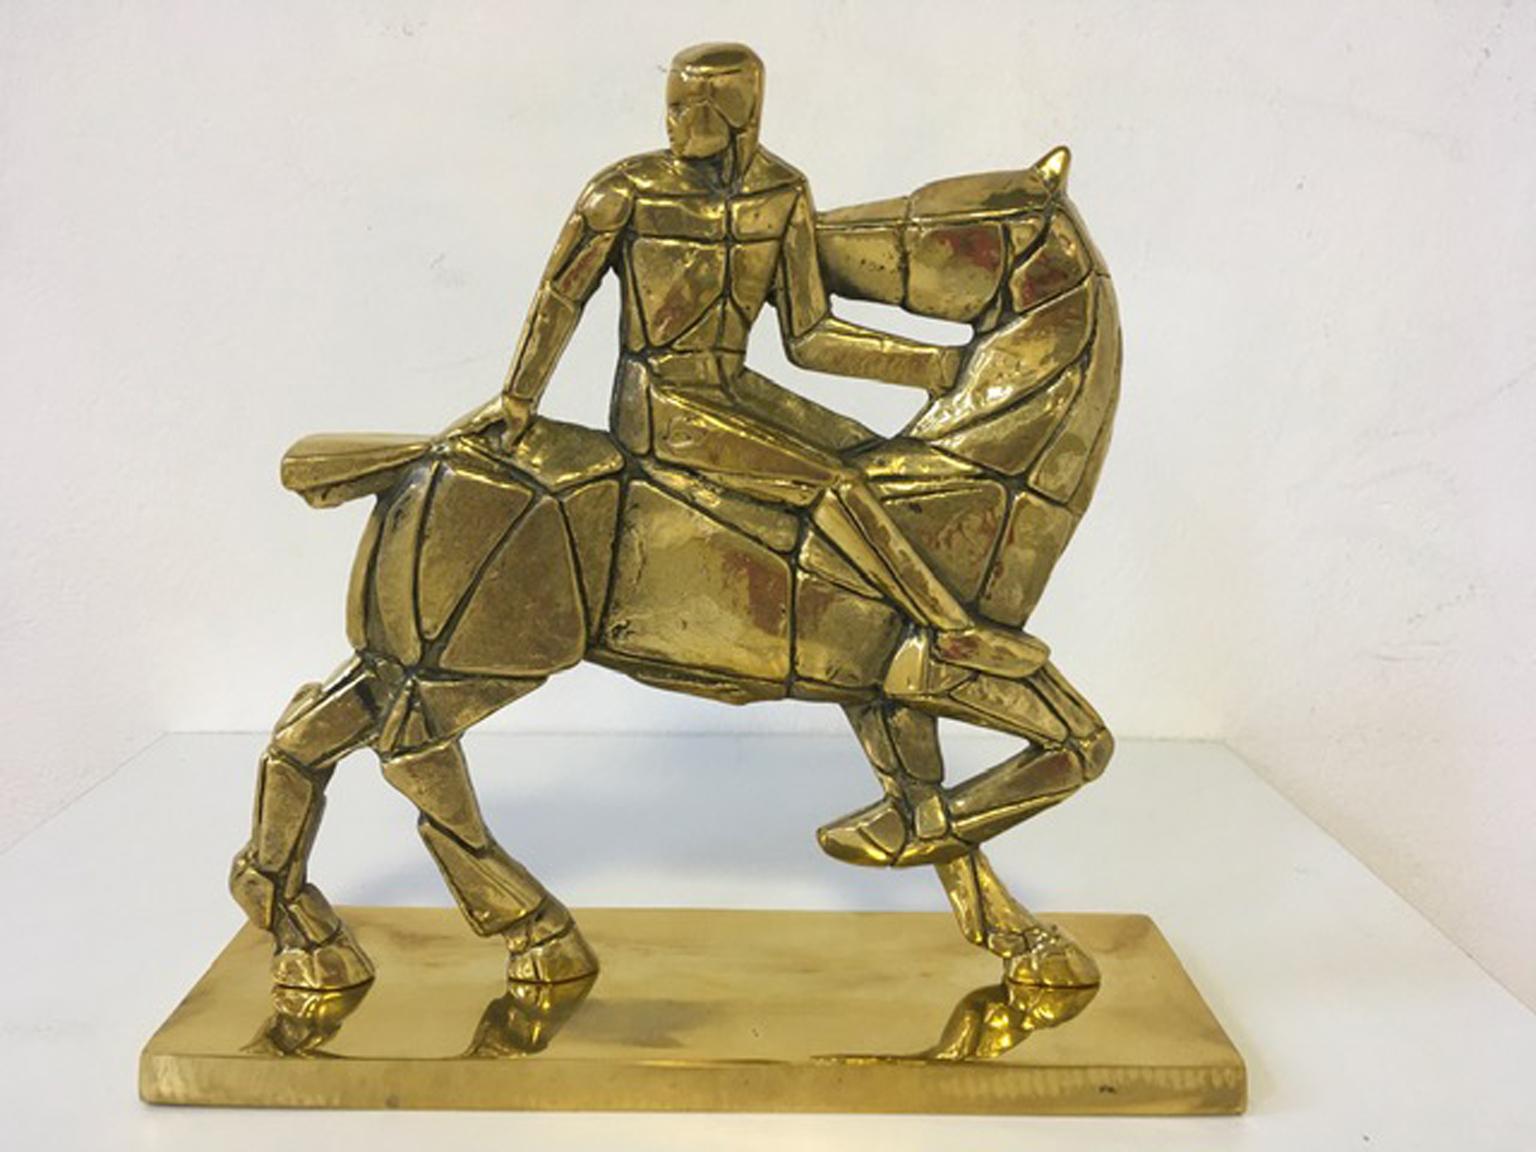 Italy 1980 Bronze Sculpture Cavallo e Cavaliere Mastrorocco Horse and Rider - Post-Modern Print by Antonio Mastrorocco